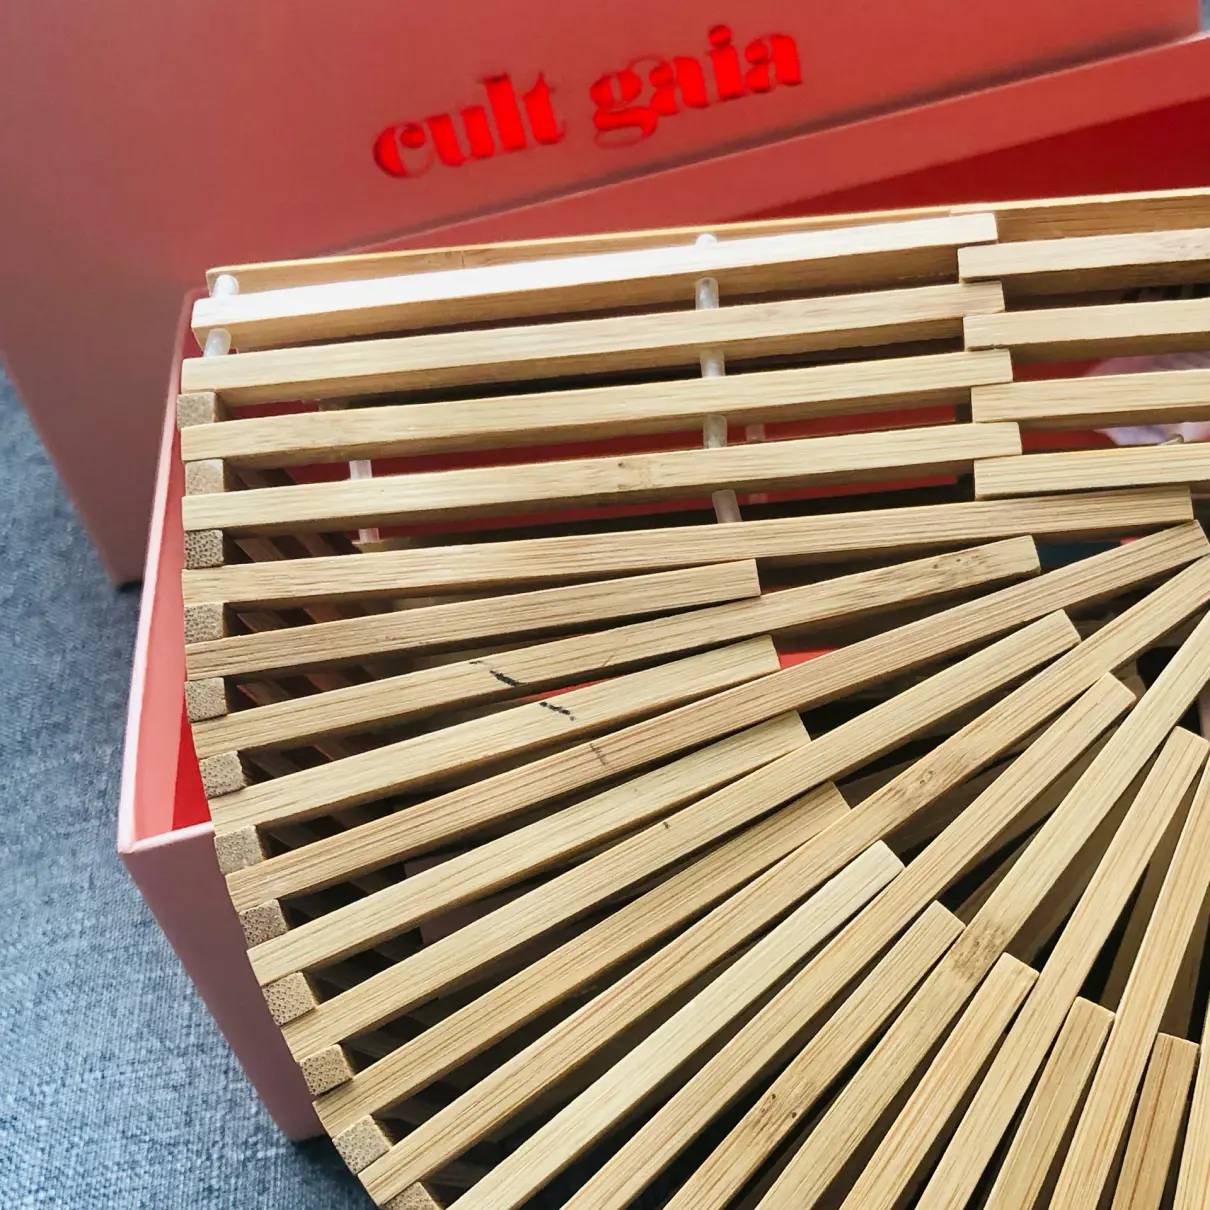 Gaia's Ark handbag Cult Gaia